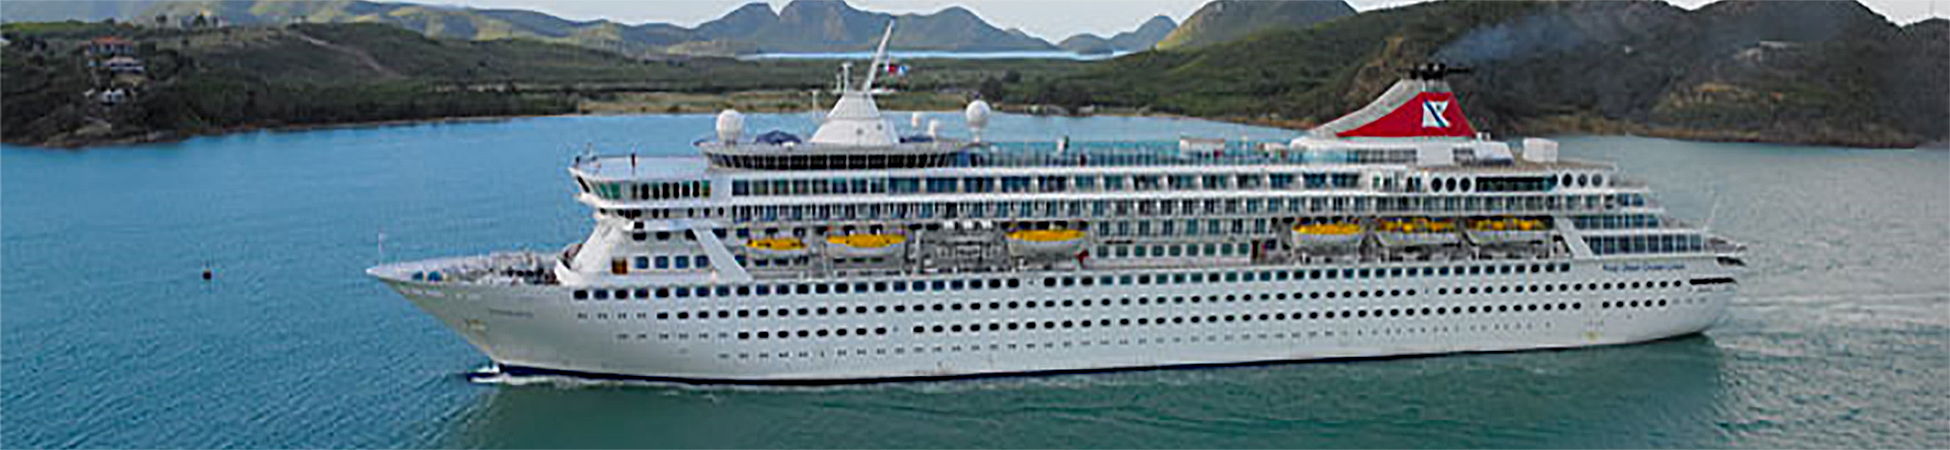 Balmoral Cape Verde Cruise